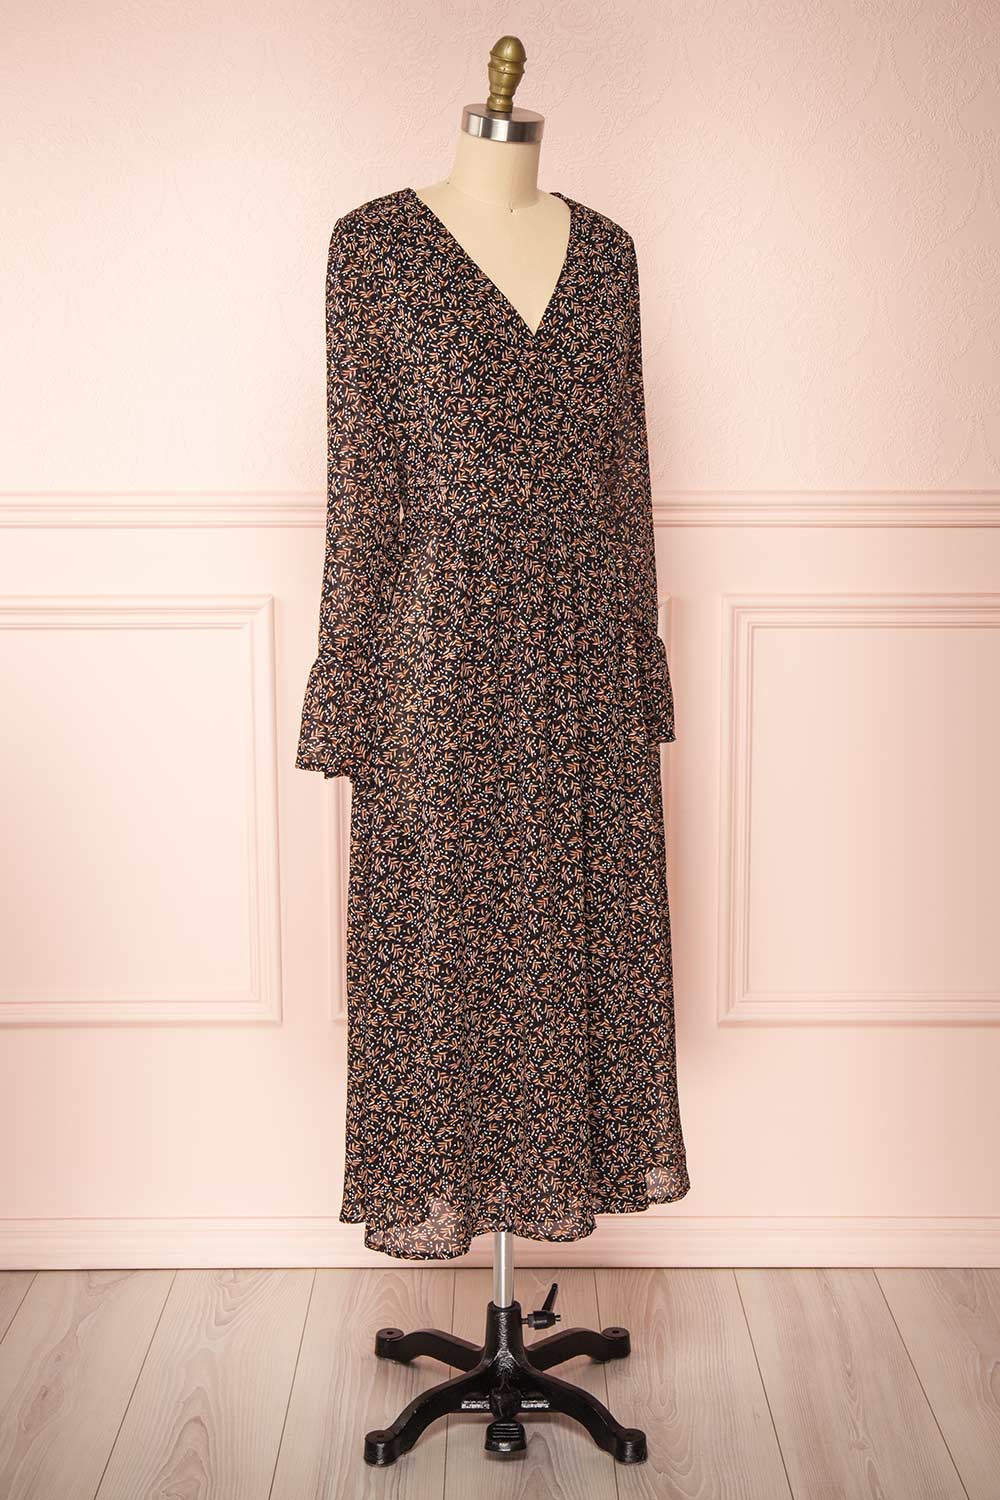 Agape Black Floral Long Sleeve Wrap Dress | Boutique 1861 side view 